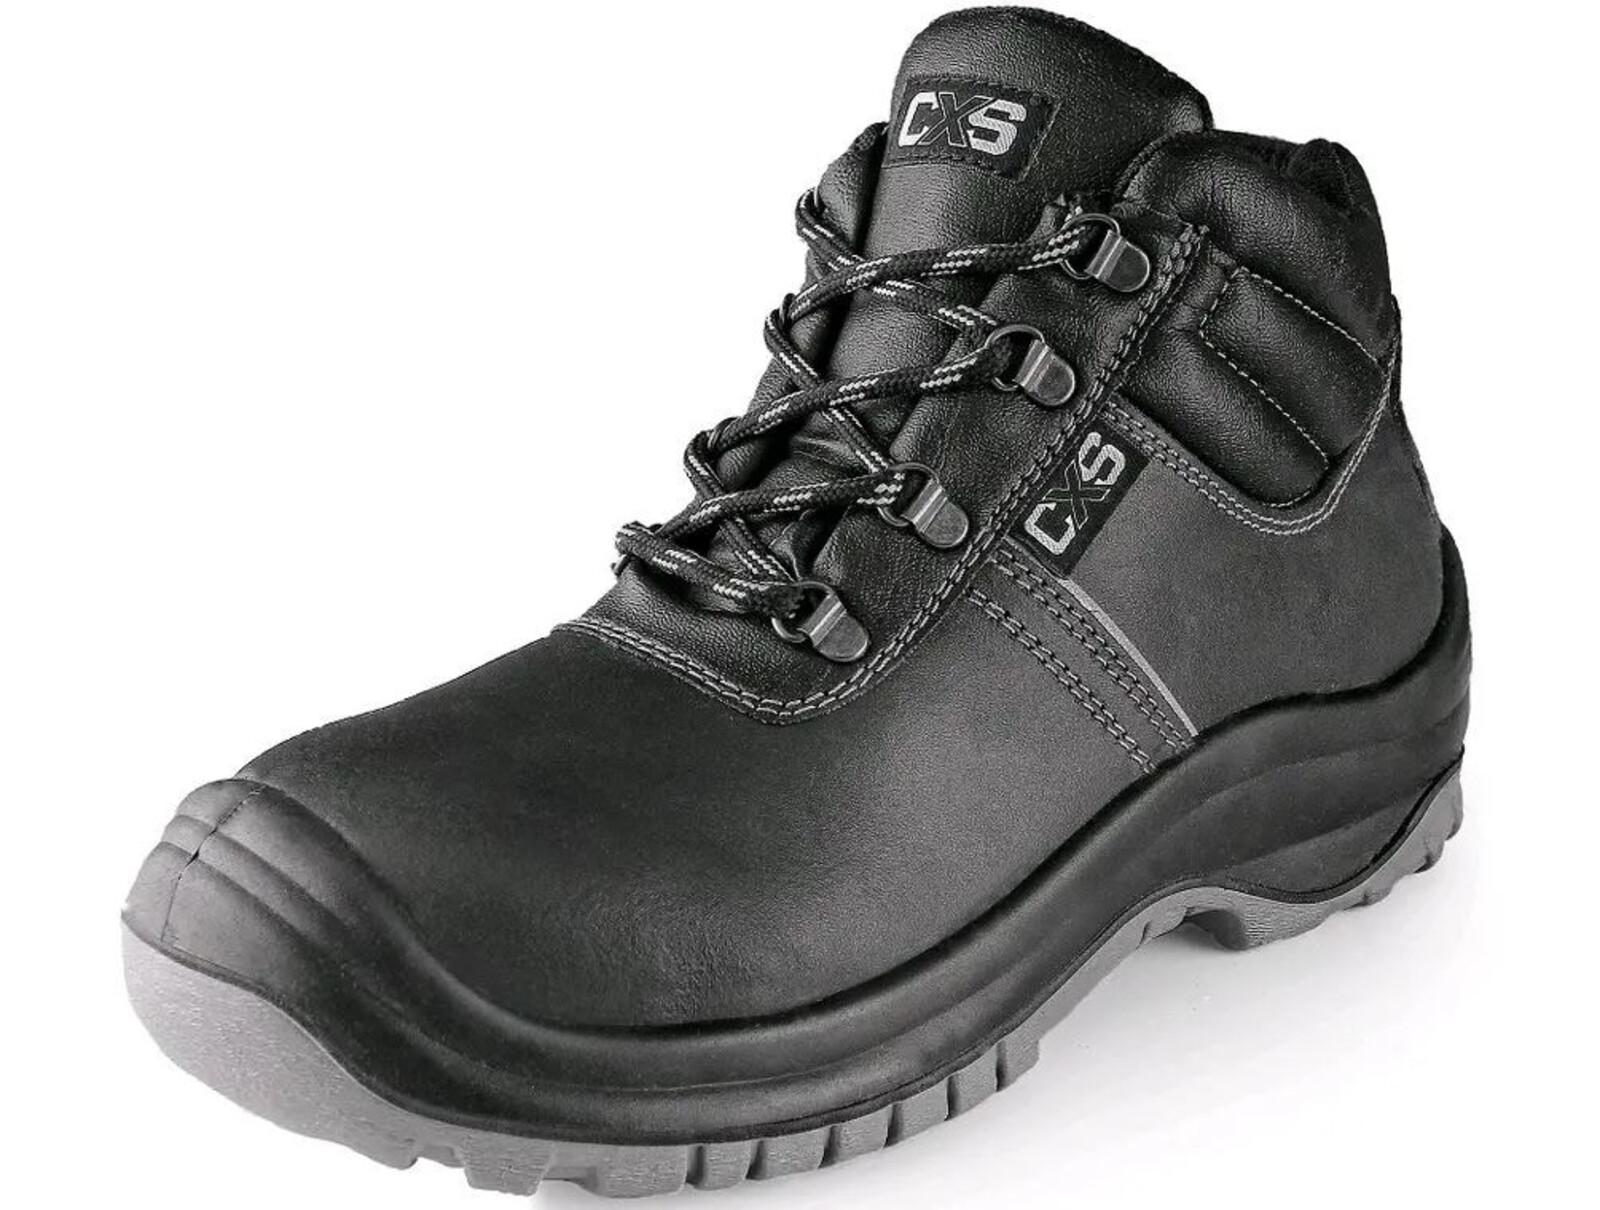 Bezpečnostná členková obuv CXS Safety Steel Mangan S3 - veľkosť: 37, farba: čierna